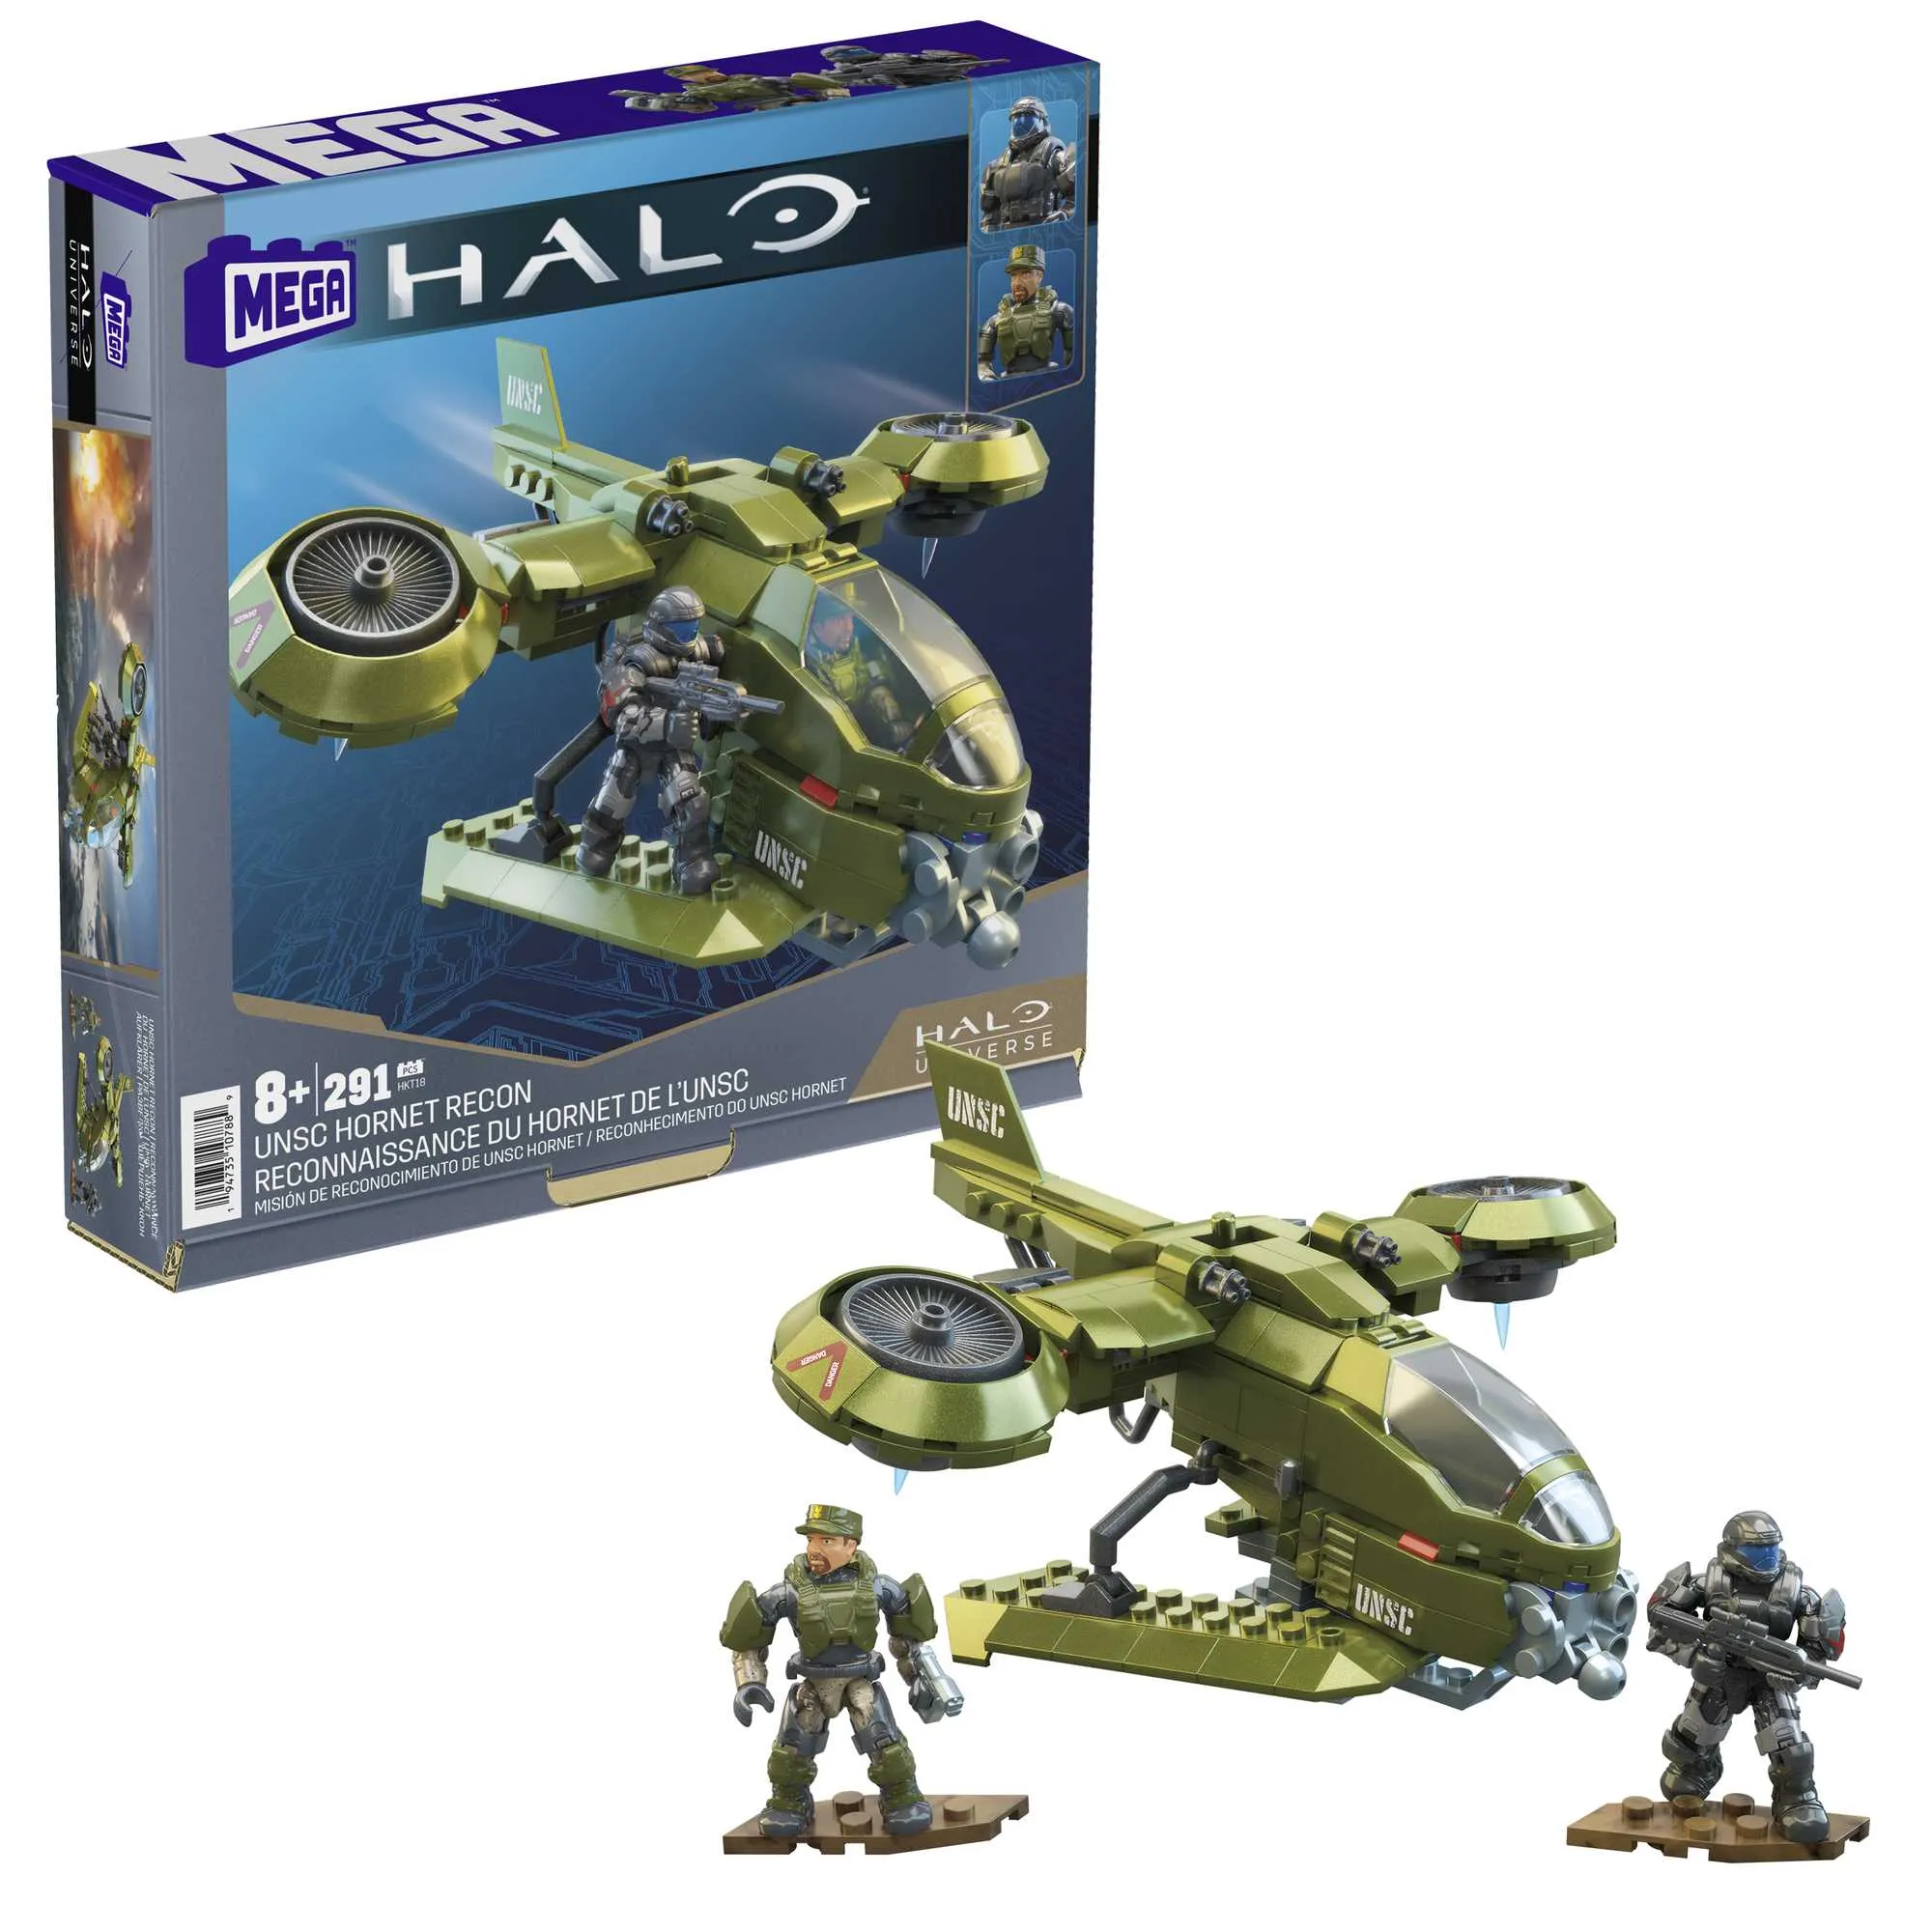 Halo Spielfahrzeug-Bausets, UNSC Hornet Aufklärer-Flugzeug mit 4 beweglichen Mikro-Actionsammelfiguren zum Sammeln und Zubehör, Konstruktionsspielzeug für Kinder a 8 Jahren Gallery